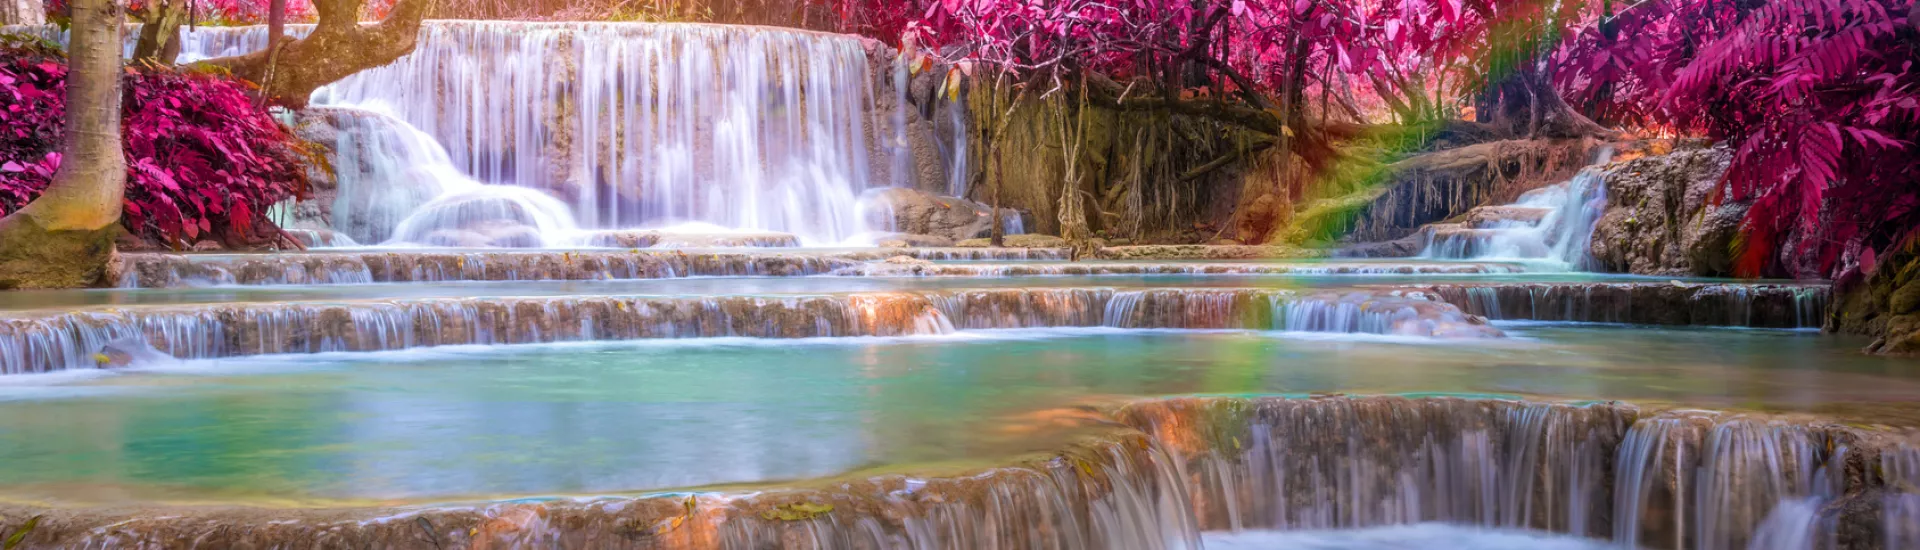 Tat Kuang Si Wasserfall